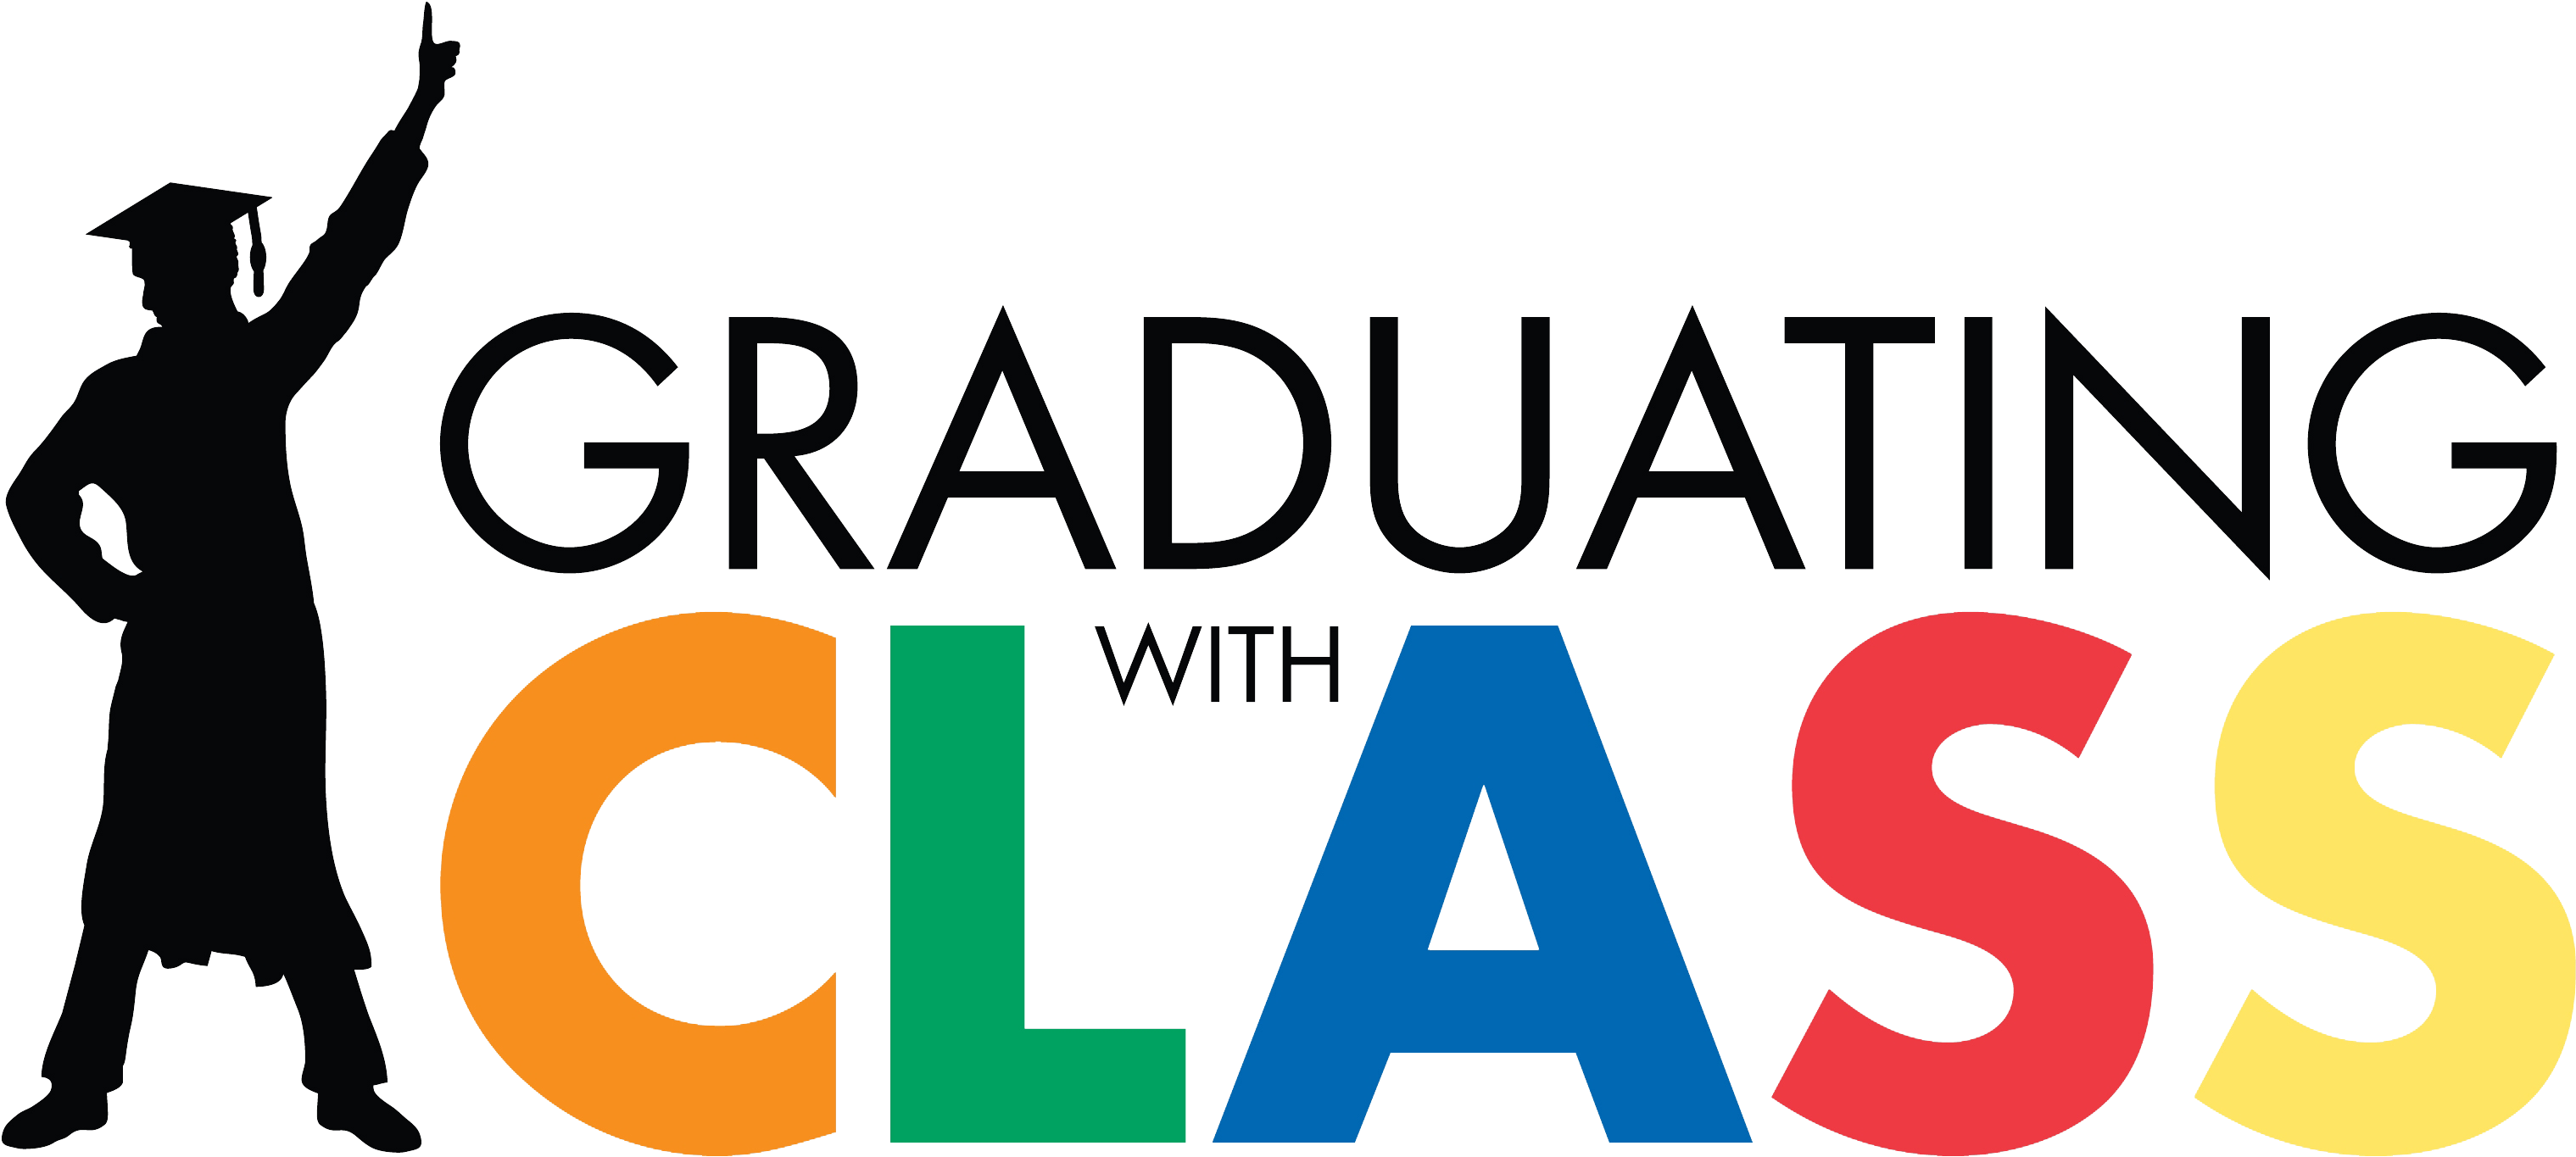 Graduating With Class Logo Transparent Background - Class Of 2018 Transparent Background (3586x1716)